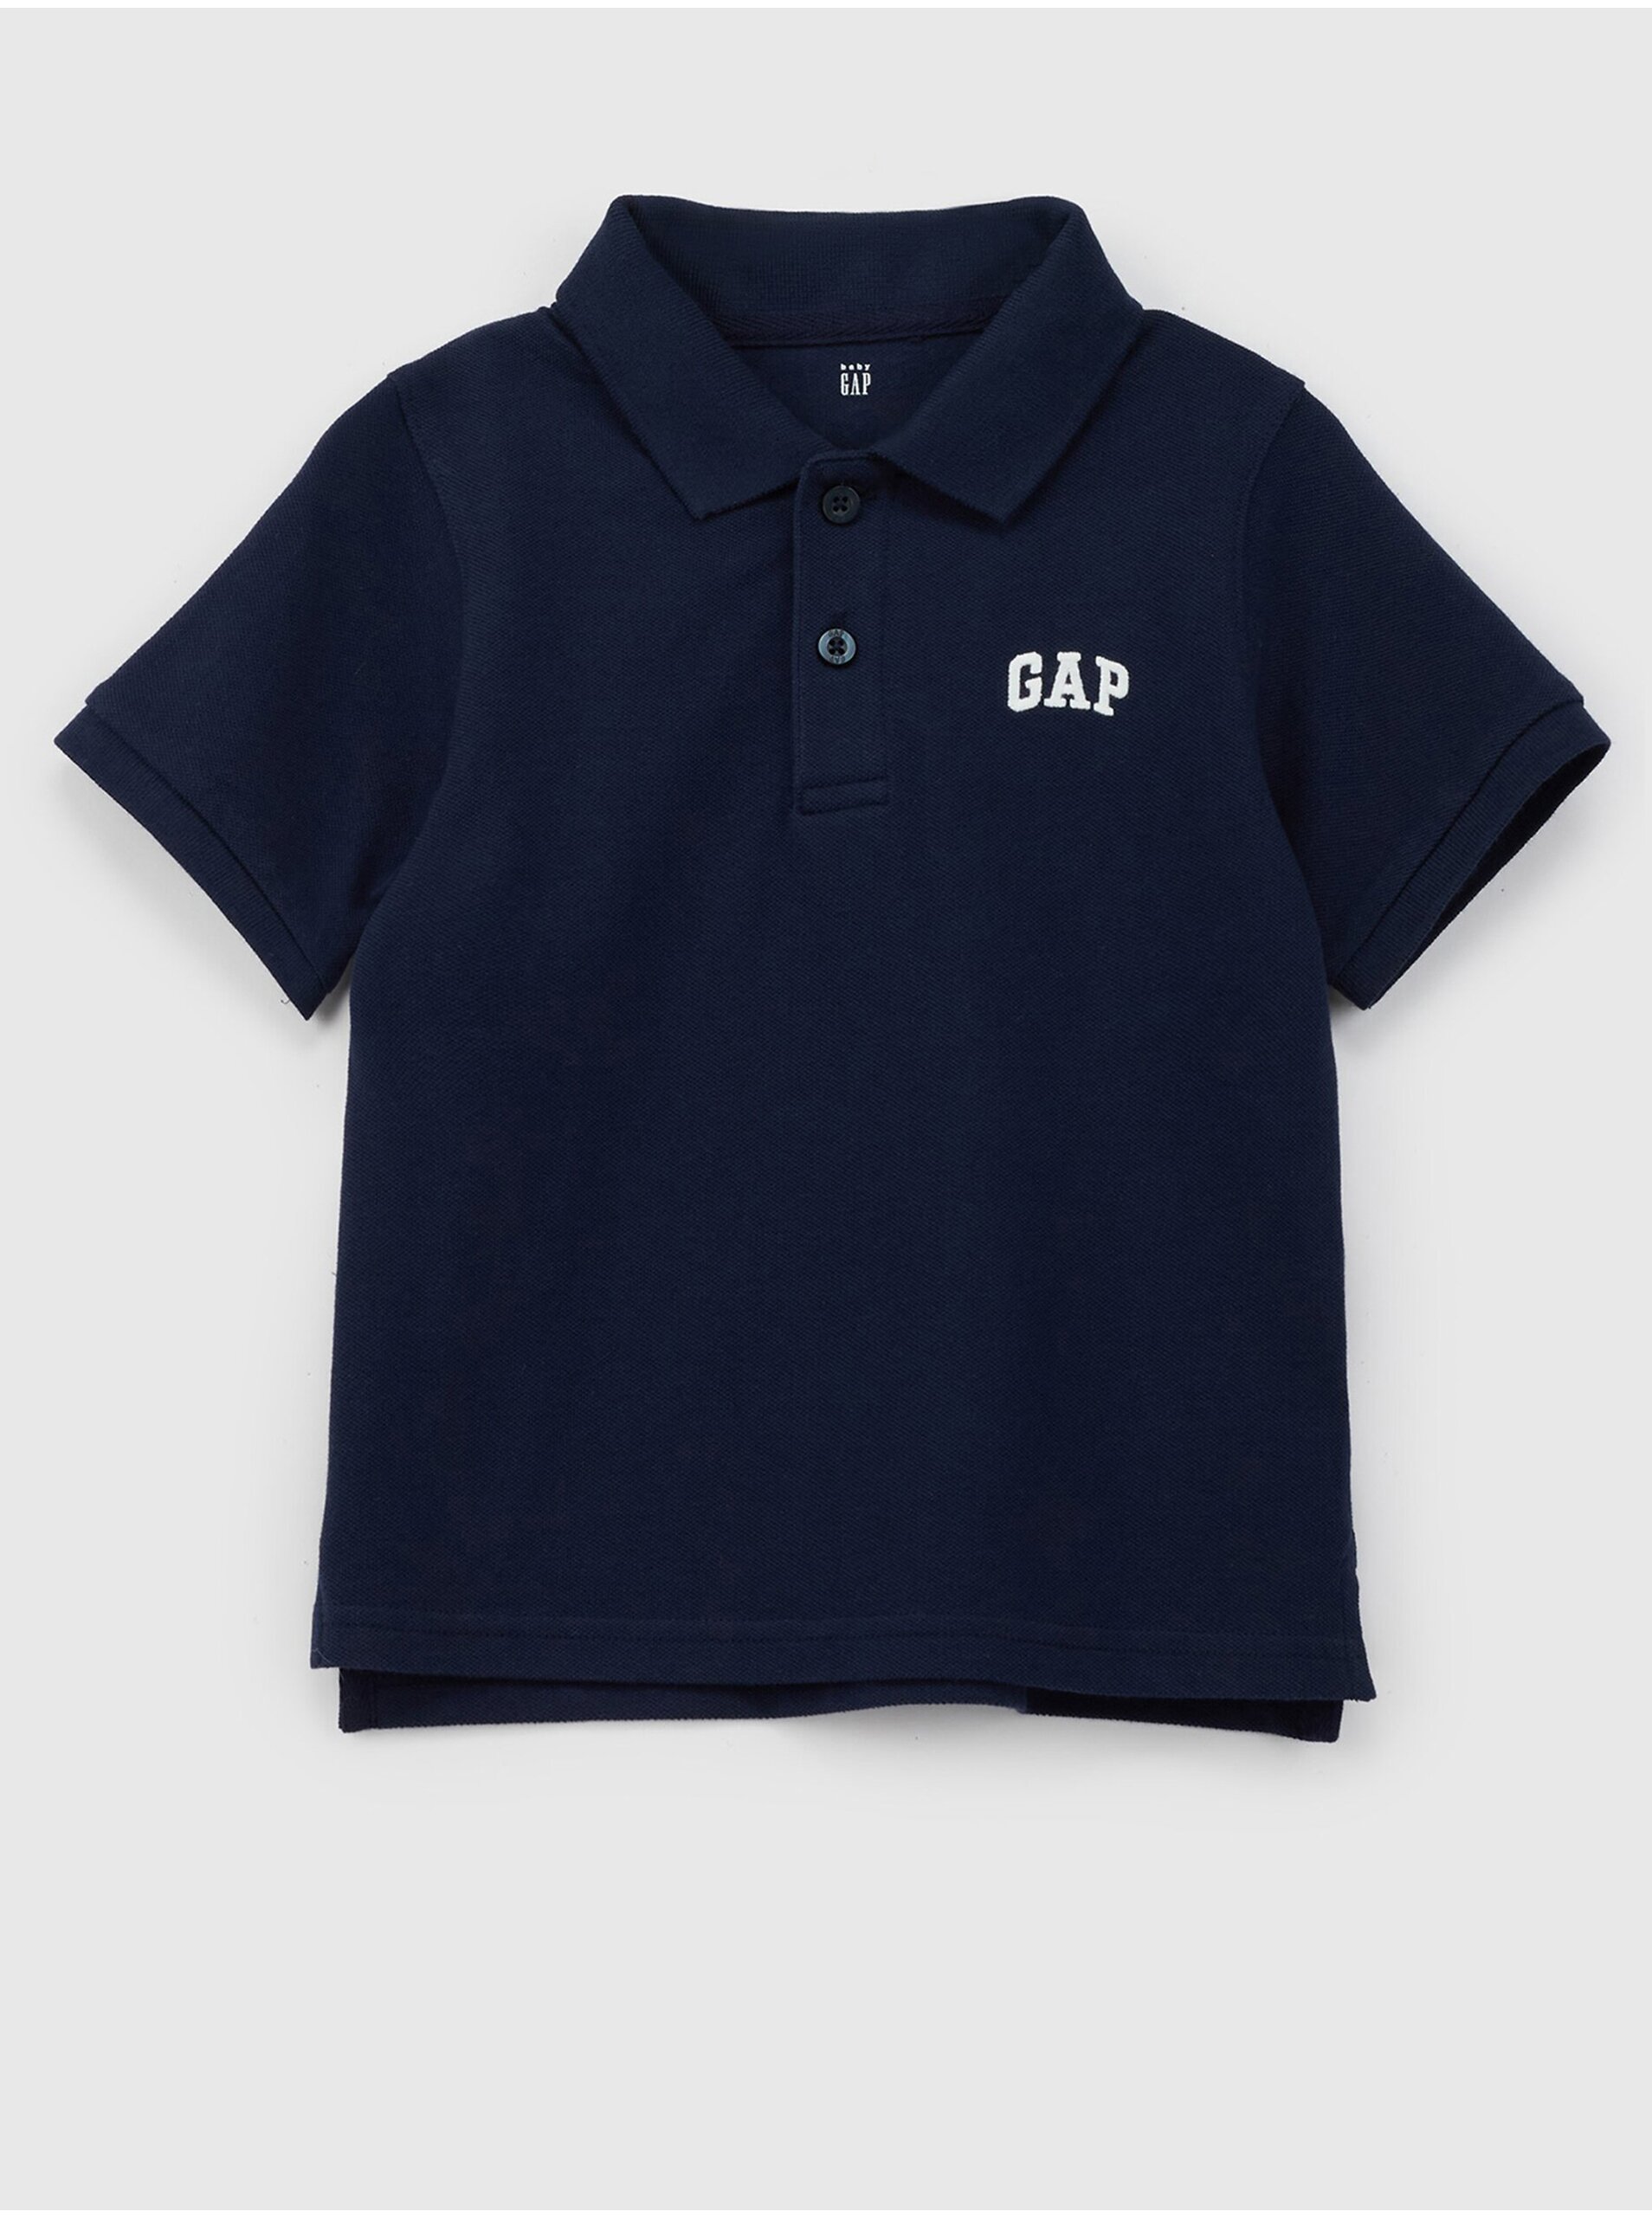 Lacno Tmavomodré chlapčenské polo tričko s logom GAP